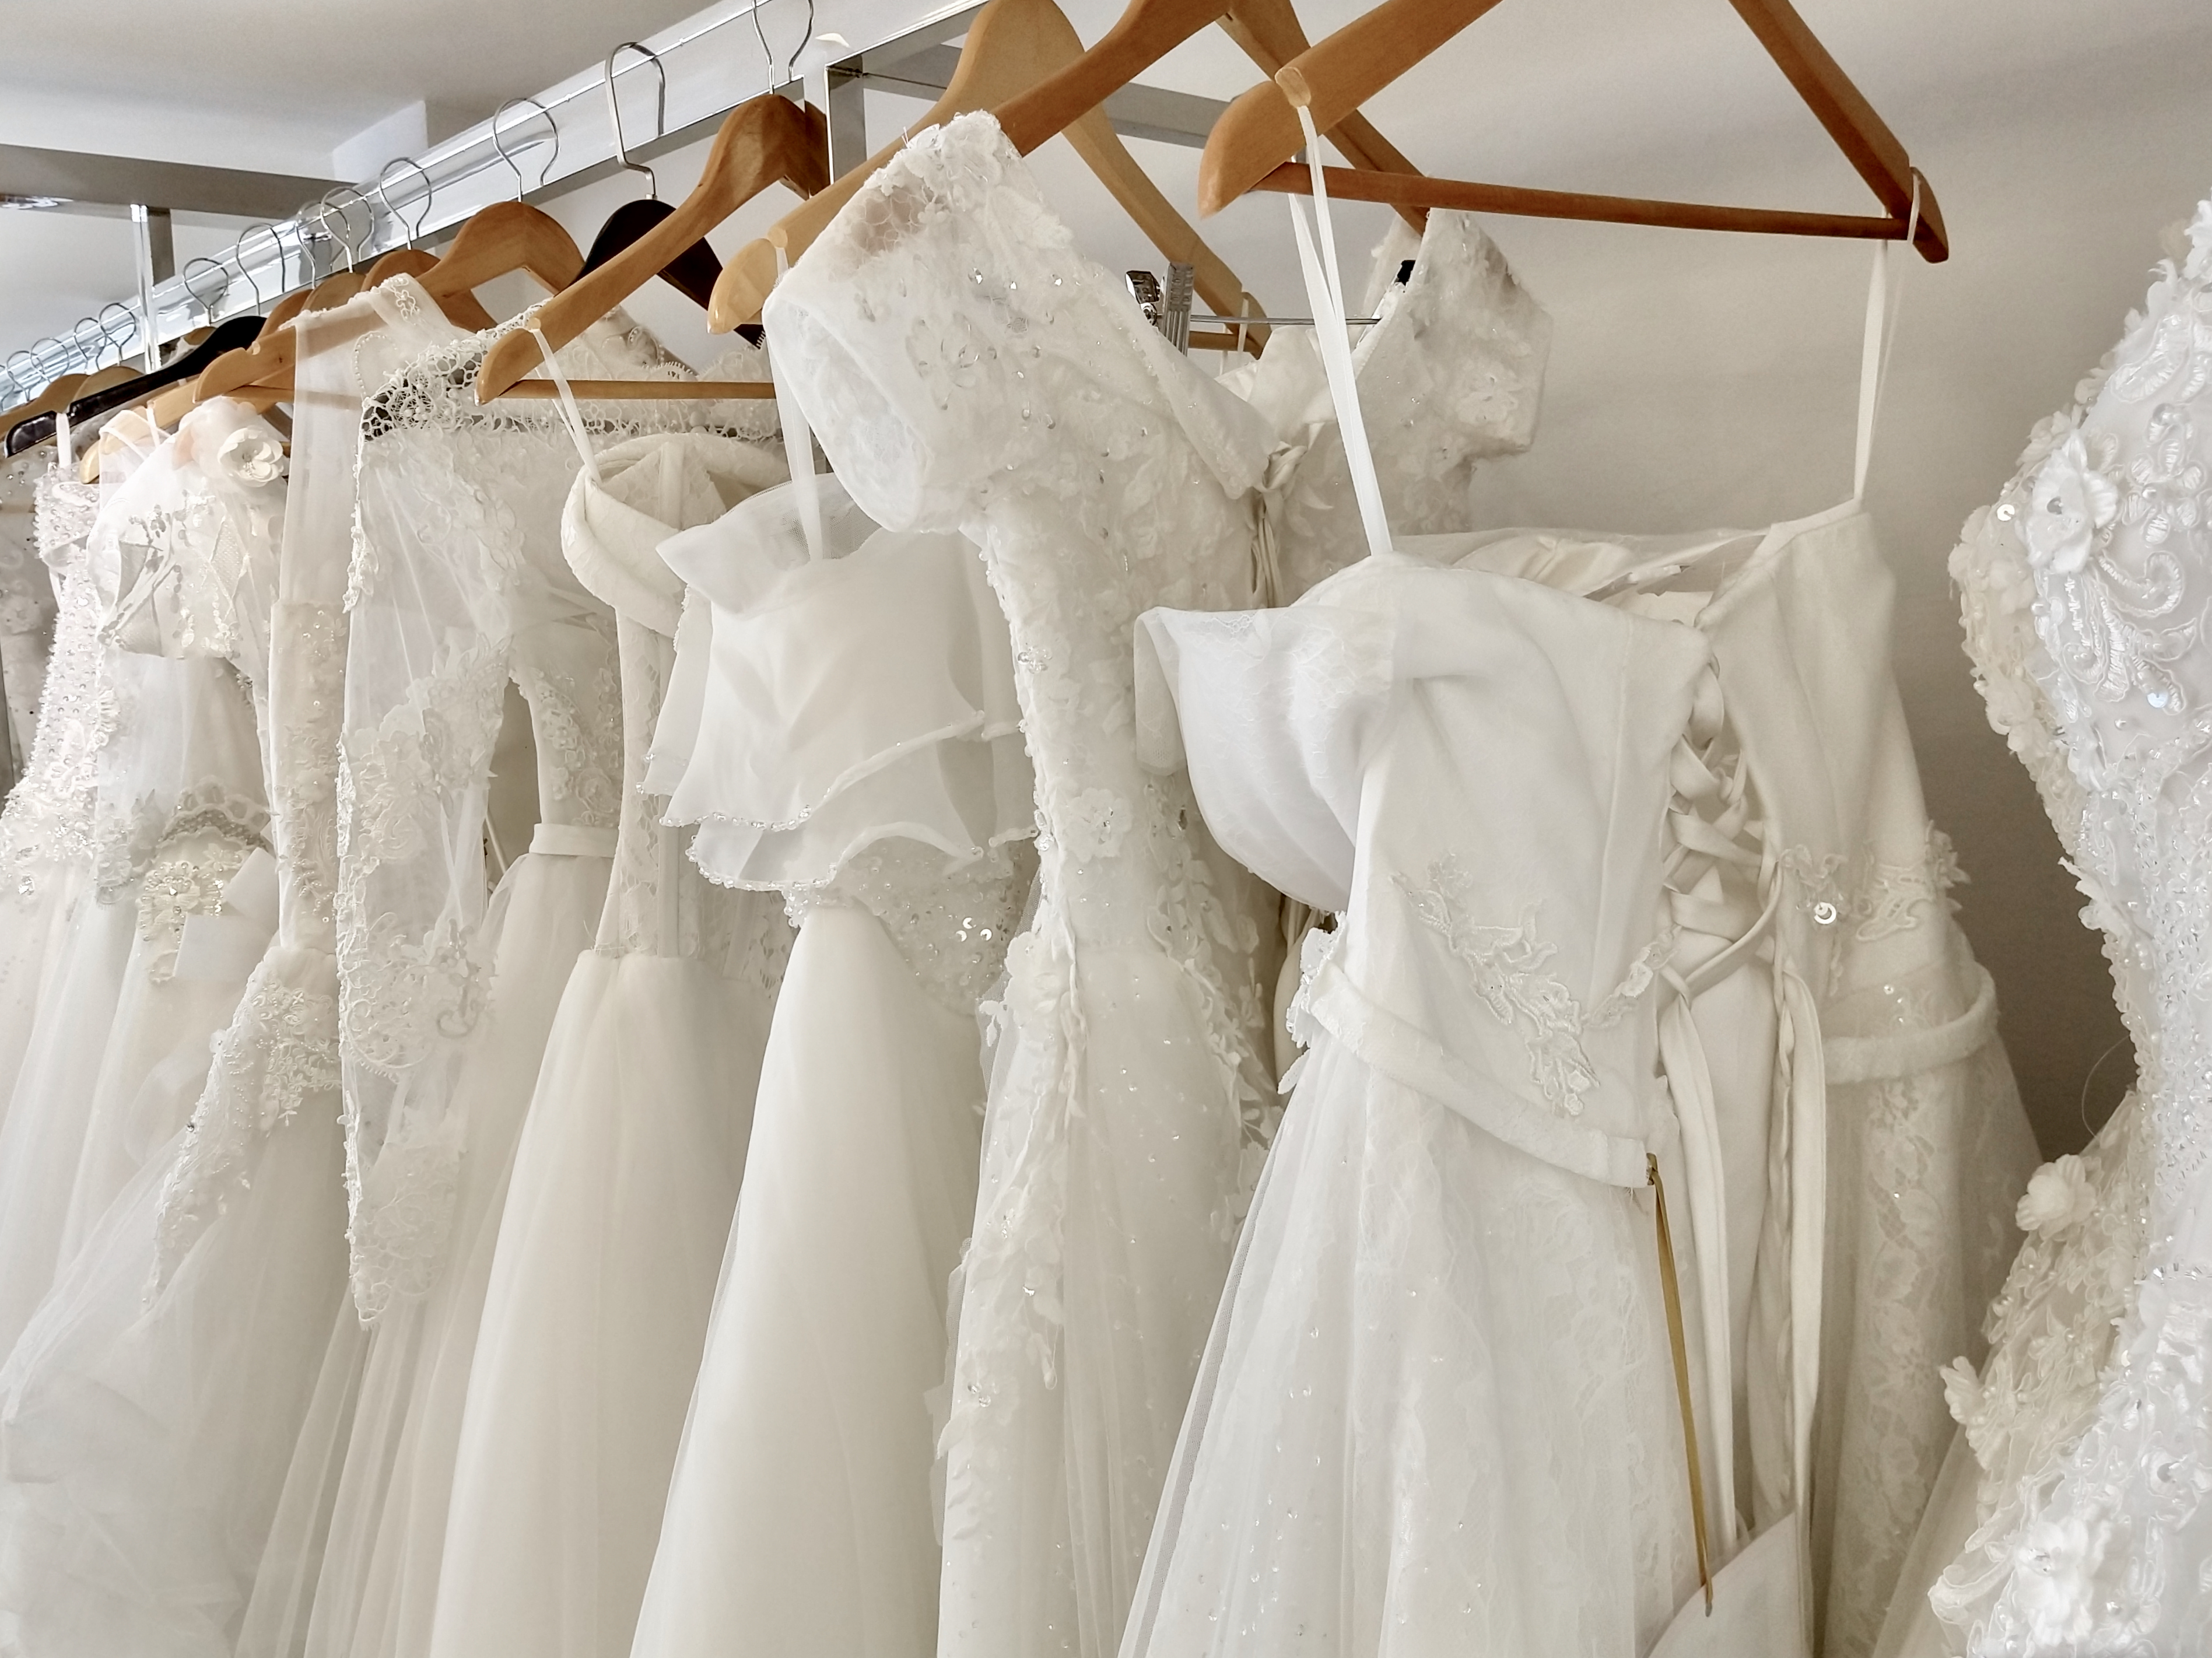 Brautkleider auf dem Ständer | Quelle: Getty Images